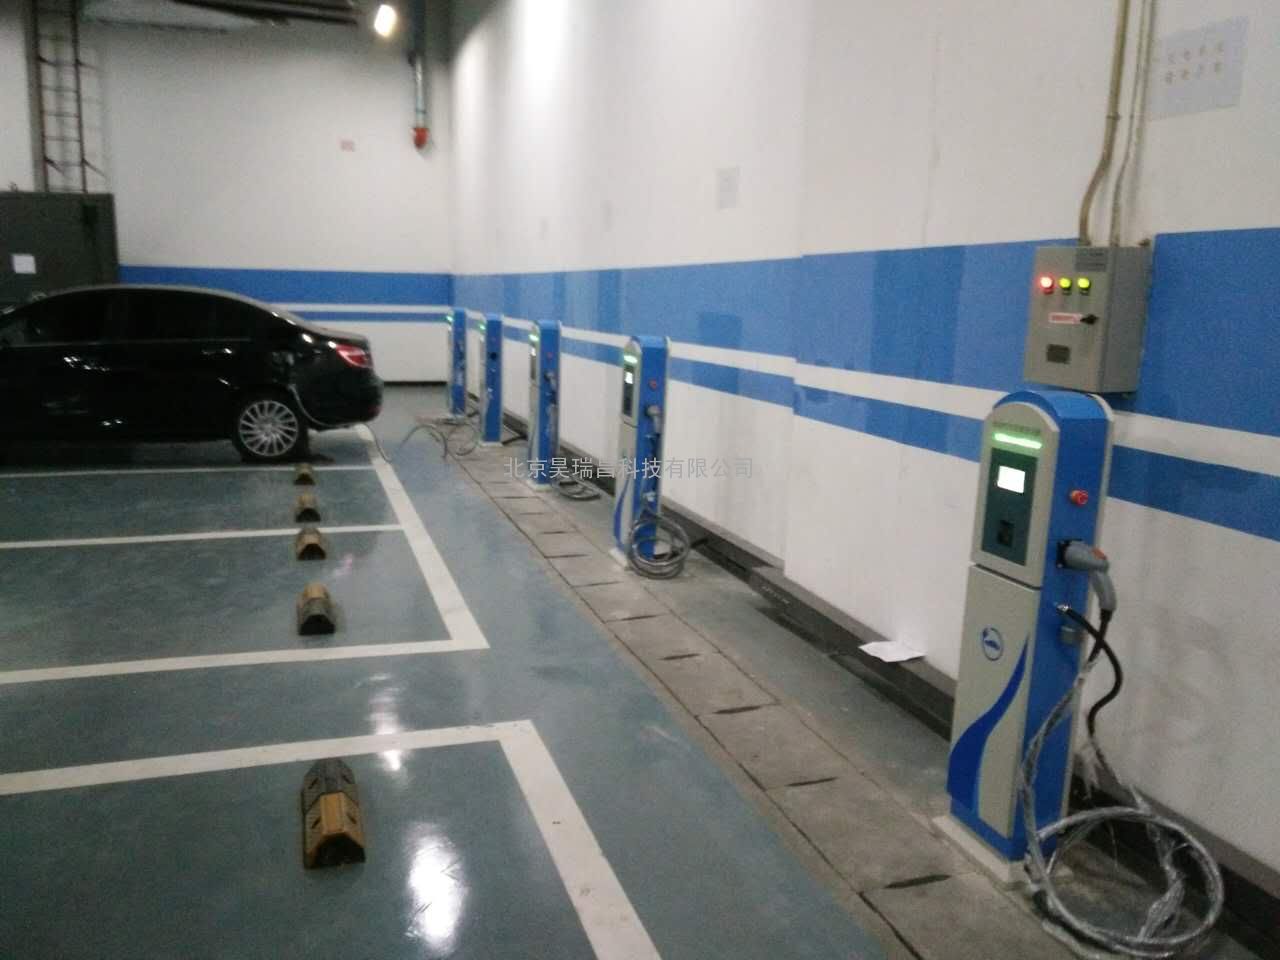 北京市科技馆部分场馆充电桩